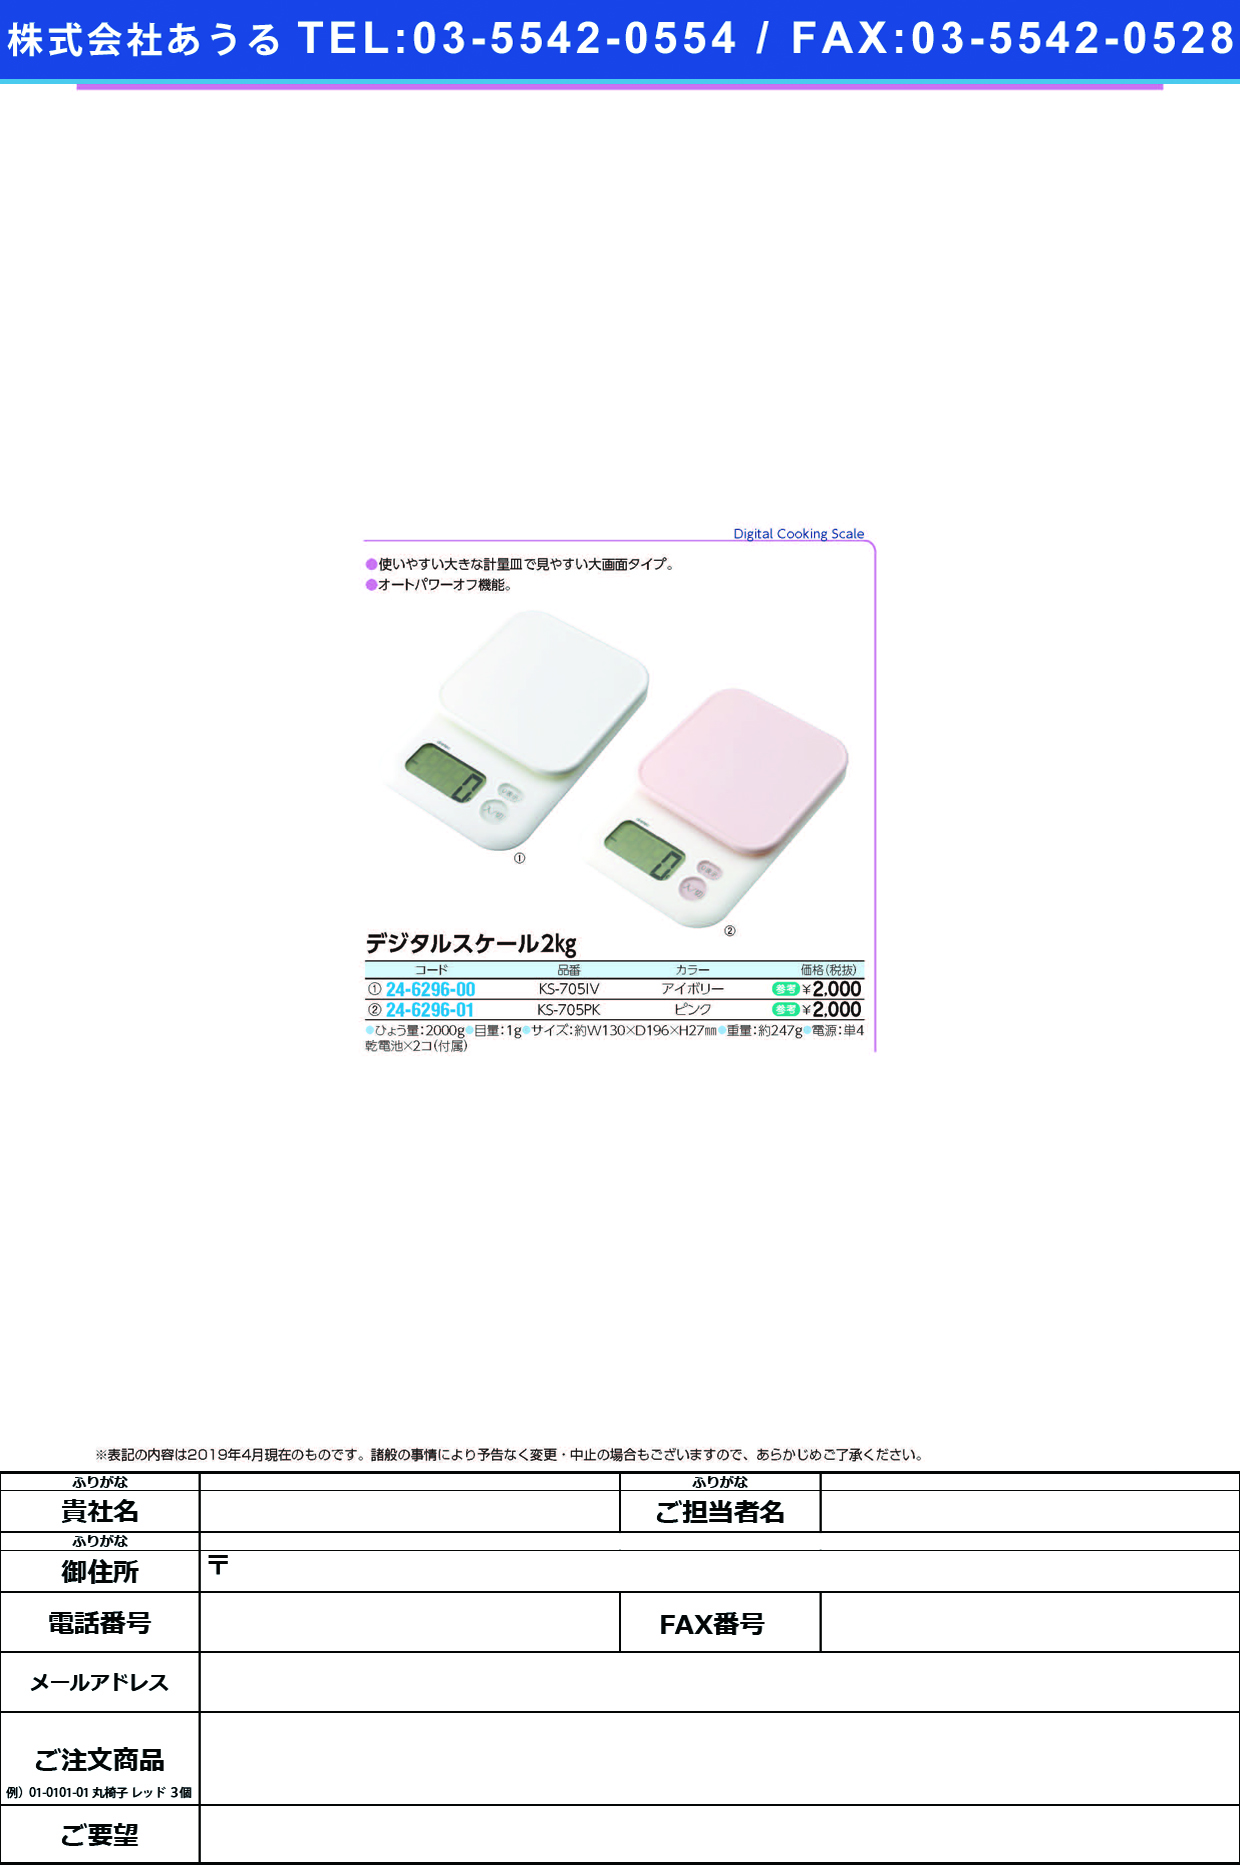 (24-6296-01)デジタルスケール２ｋｇ KS-705PK(ﾋﾟﾝｸ) ﾃﾞｼﾞﾀﾙｽｹｰﾙ2KG(ドリテック)【1台単位】【2019年カタログ商品】